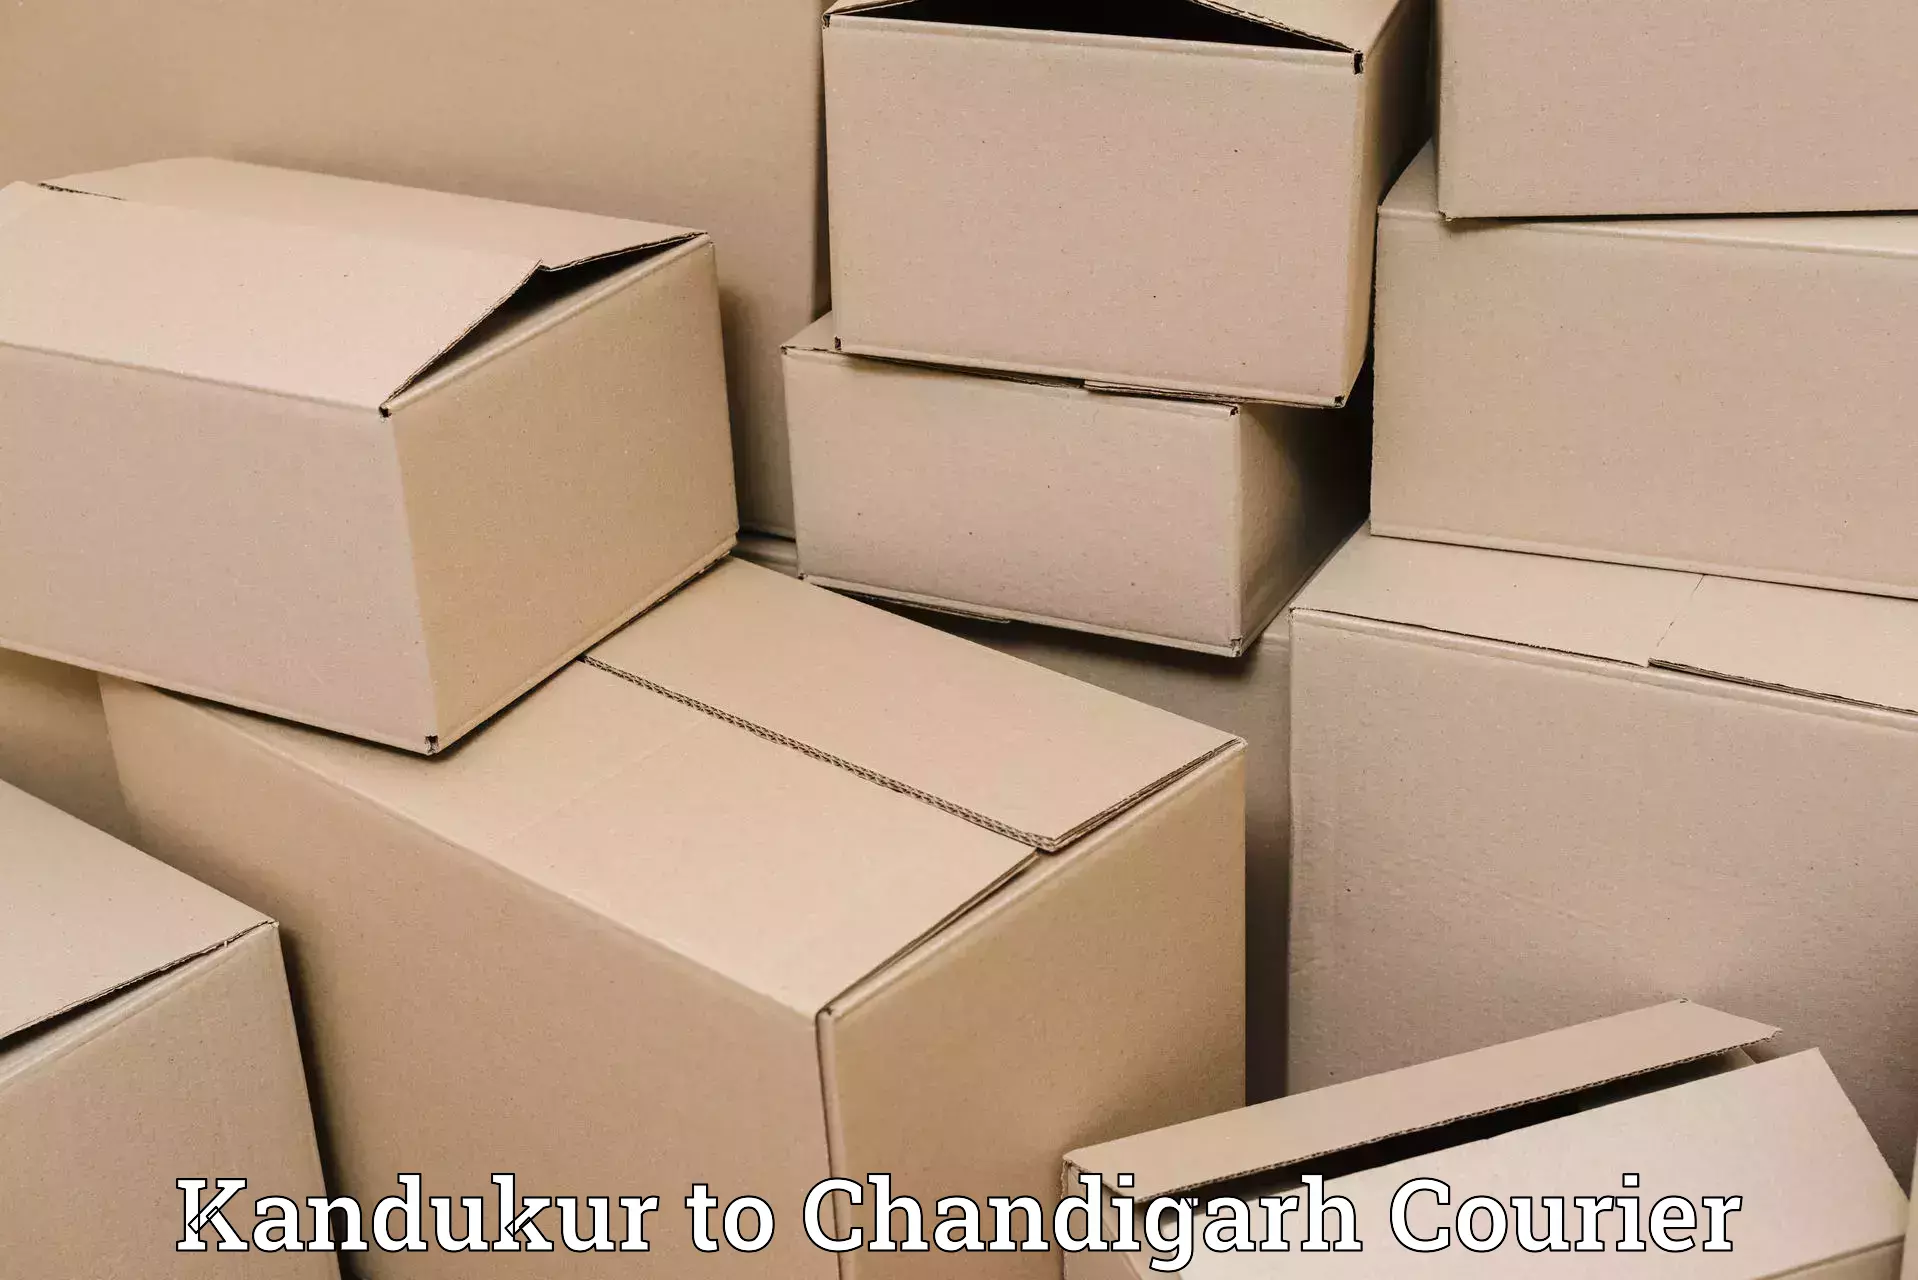 High-capacity parcel service Kandukur to Chandigarh